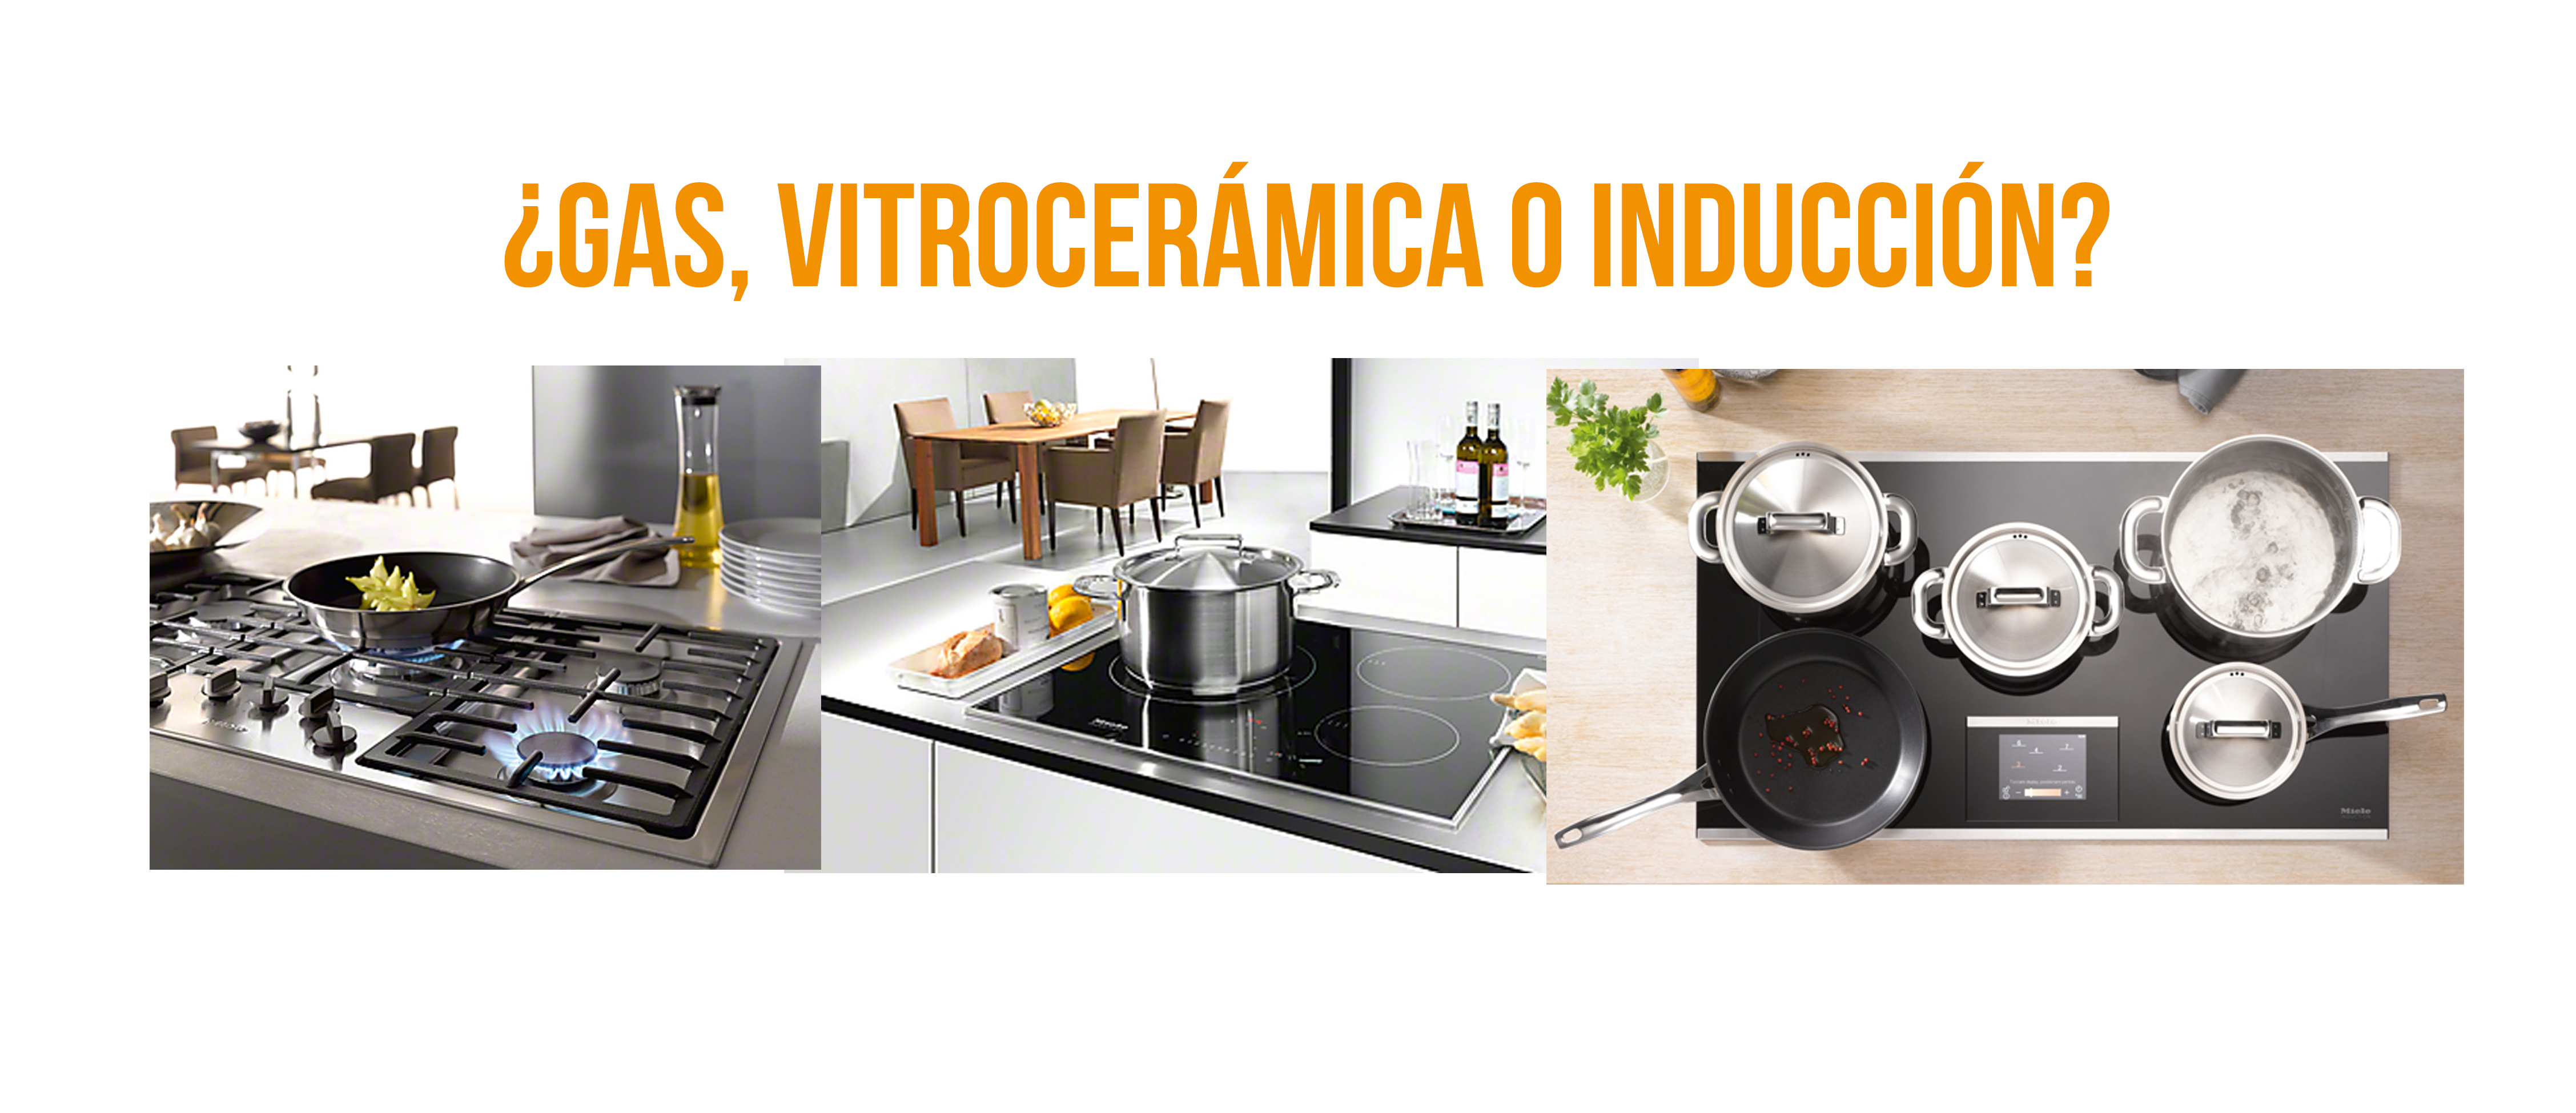 Guía para escoger cocina: gas, vitrocerámica, inducción o microondas. Pros  y contras, criterios saludables.